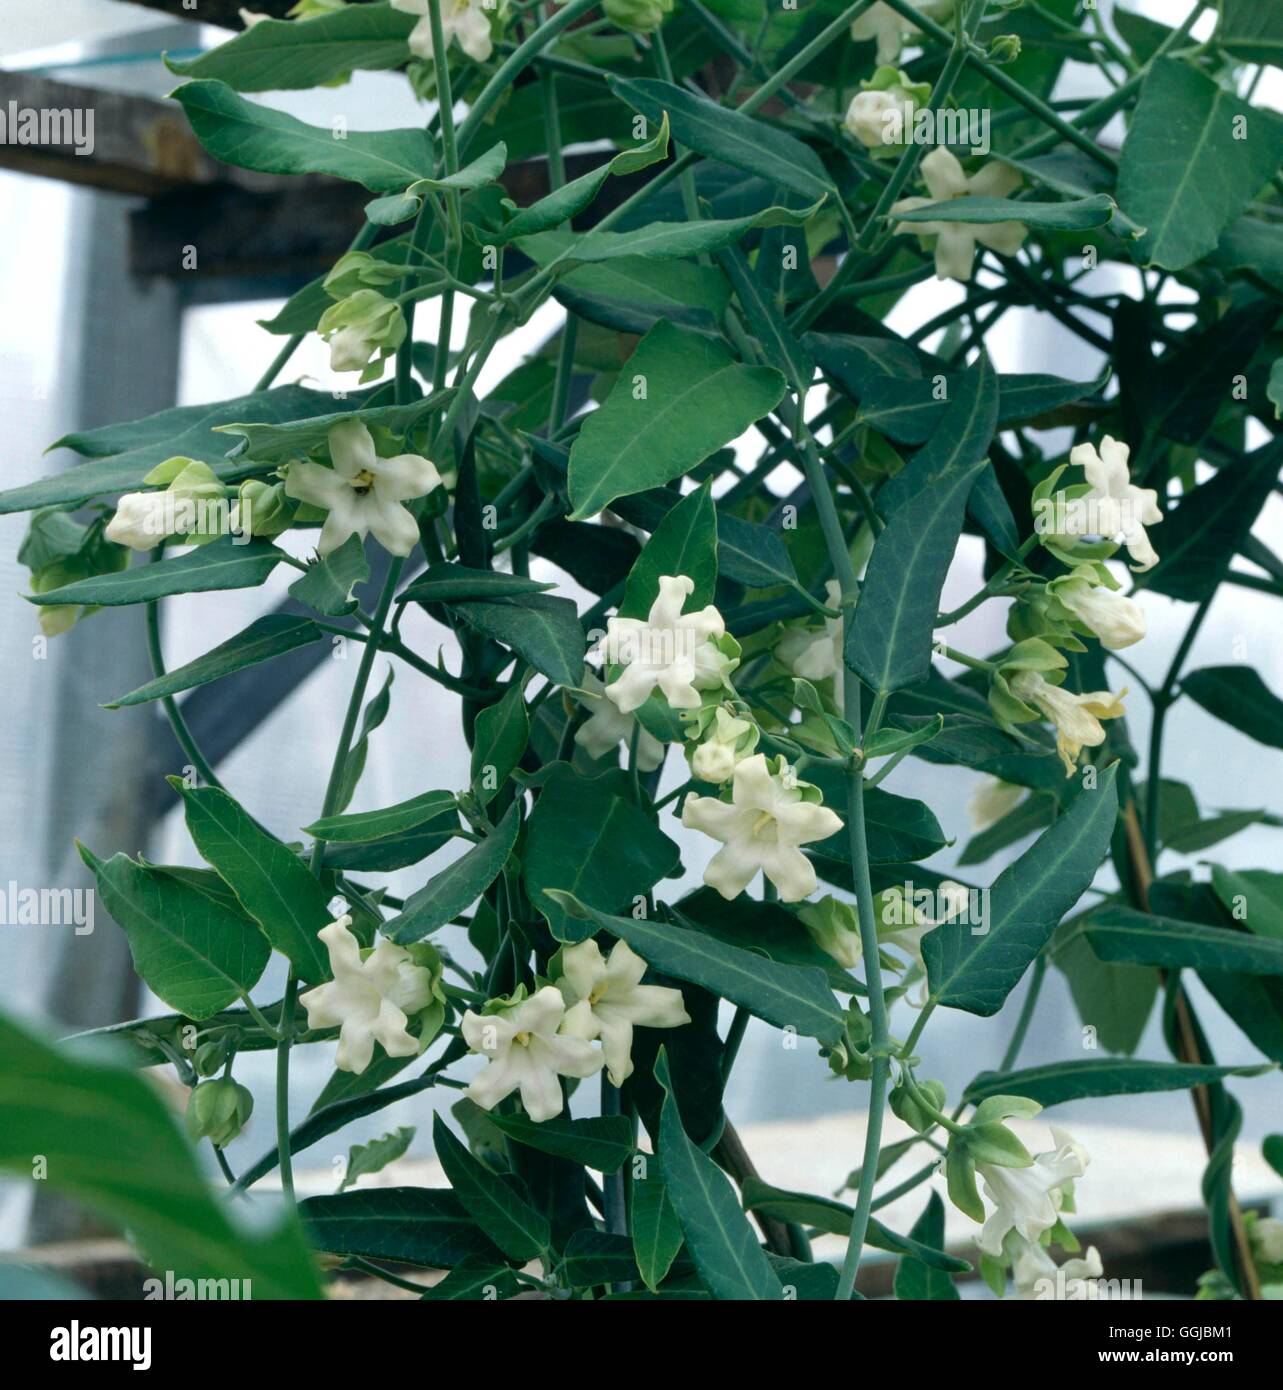 Araujia sericofera - Impianto di crudeli ''fiore della vescica' HPS053105 /Photosh' Foto Stock